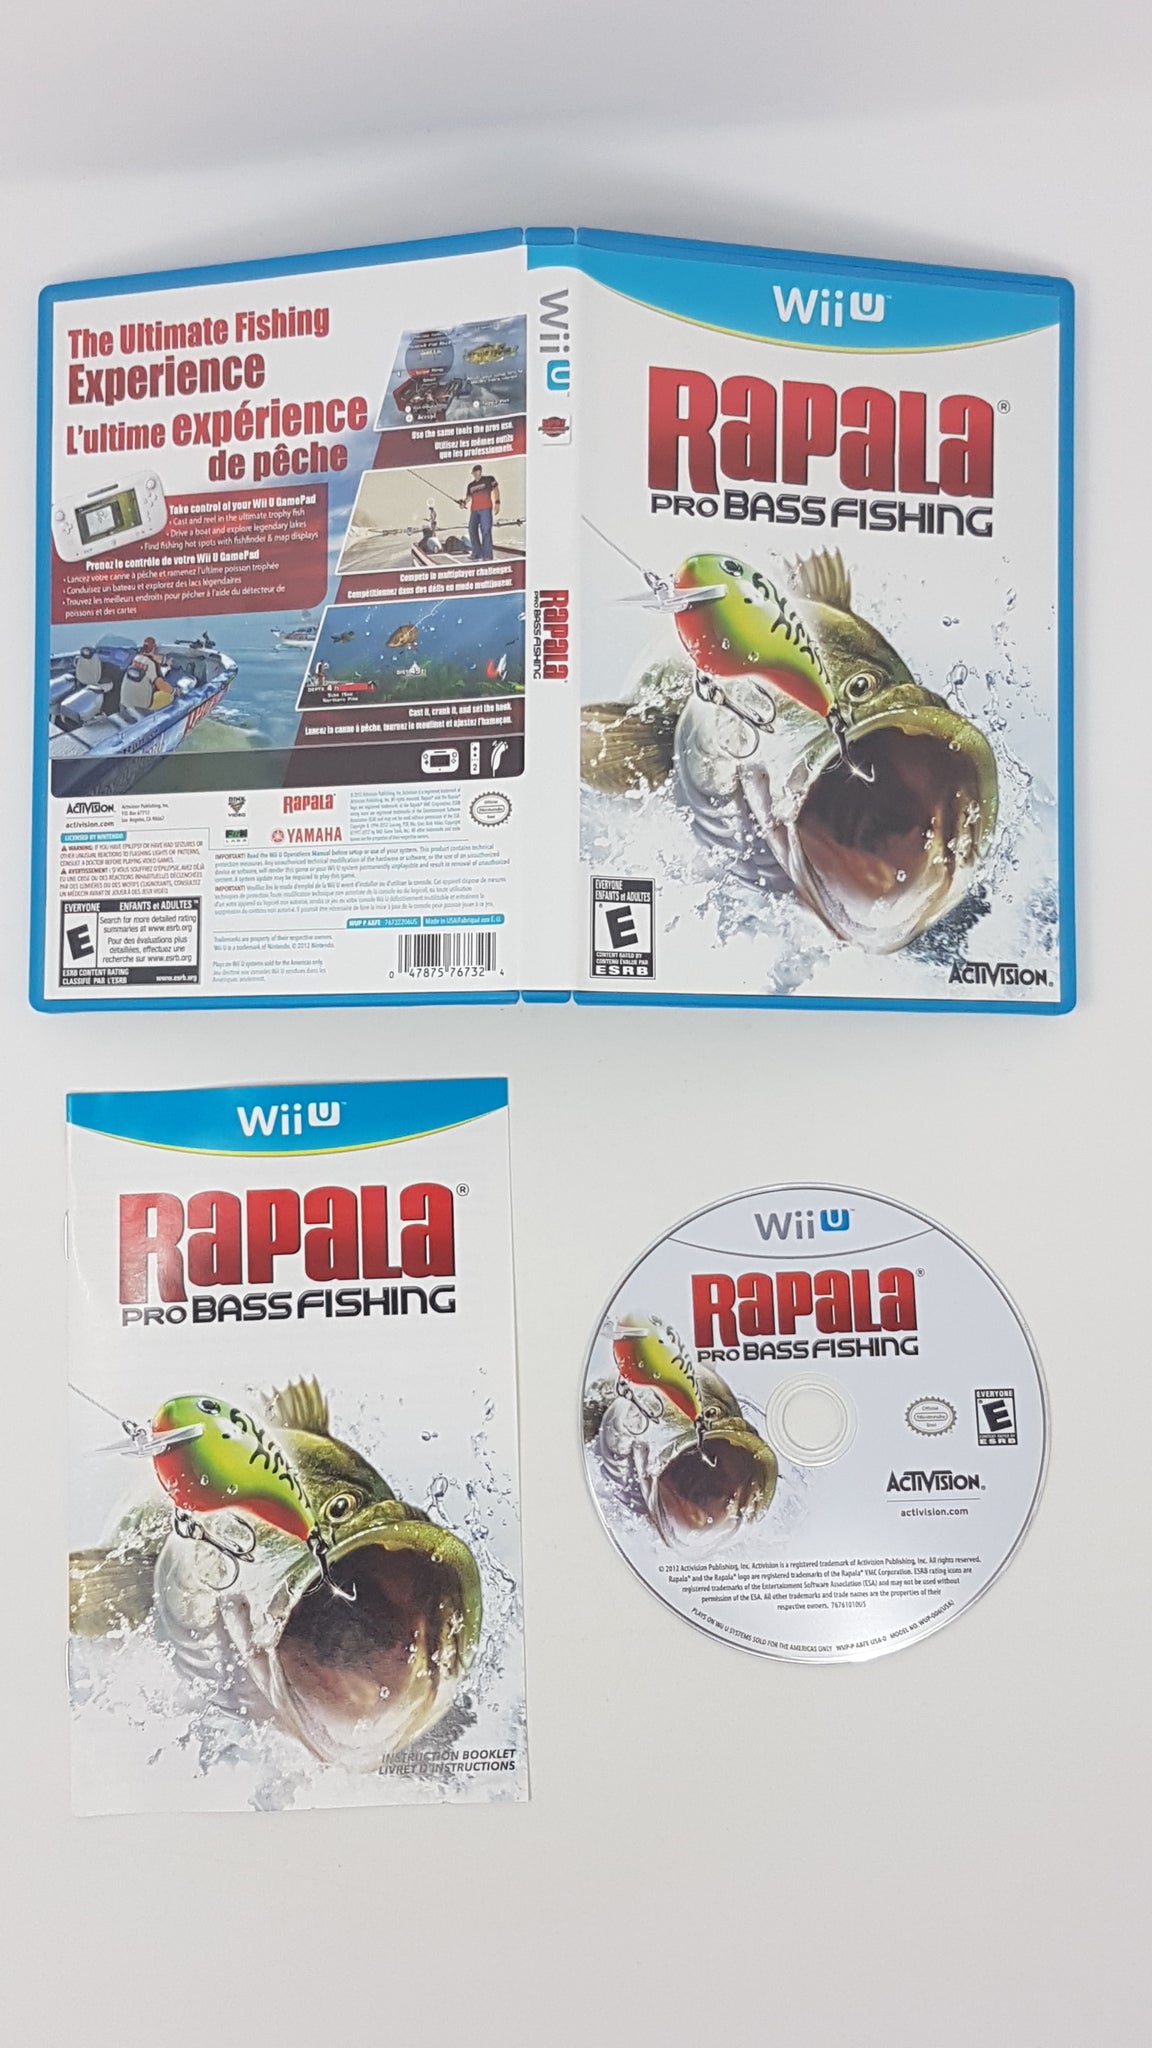 Rapala Pro Bass Fishing annoncé par Activision